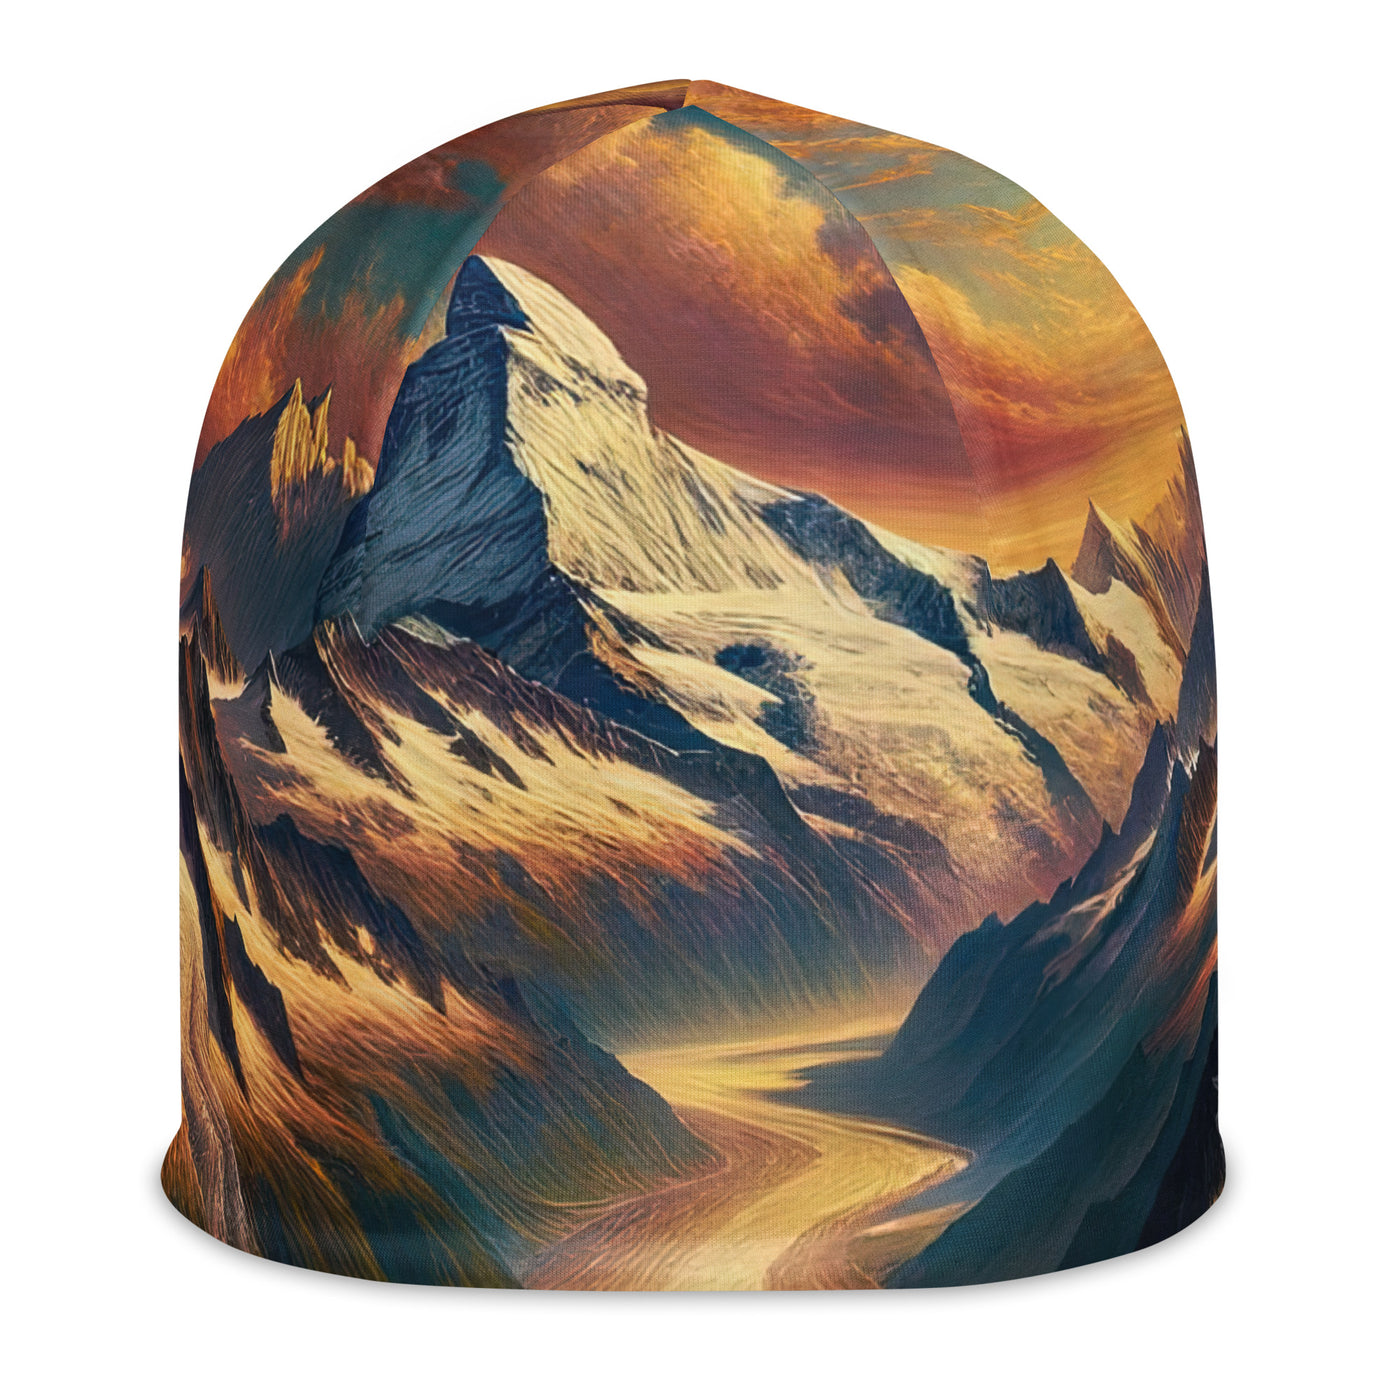 Ölgemälde eines Wanderers auf einem Hügel mit Panoramablick auf schneebedeckte Alpen und goldenen Himmel - Beanie (All-Over Print) wandern xxx yyy zzz L